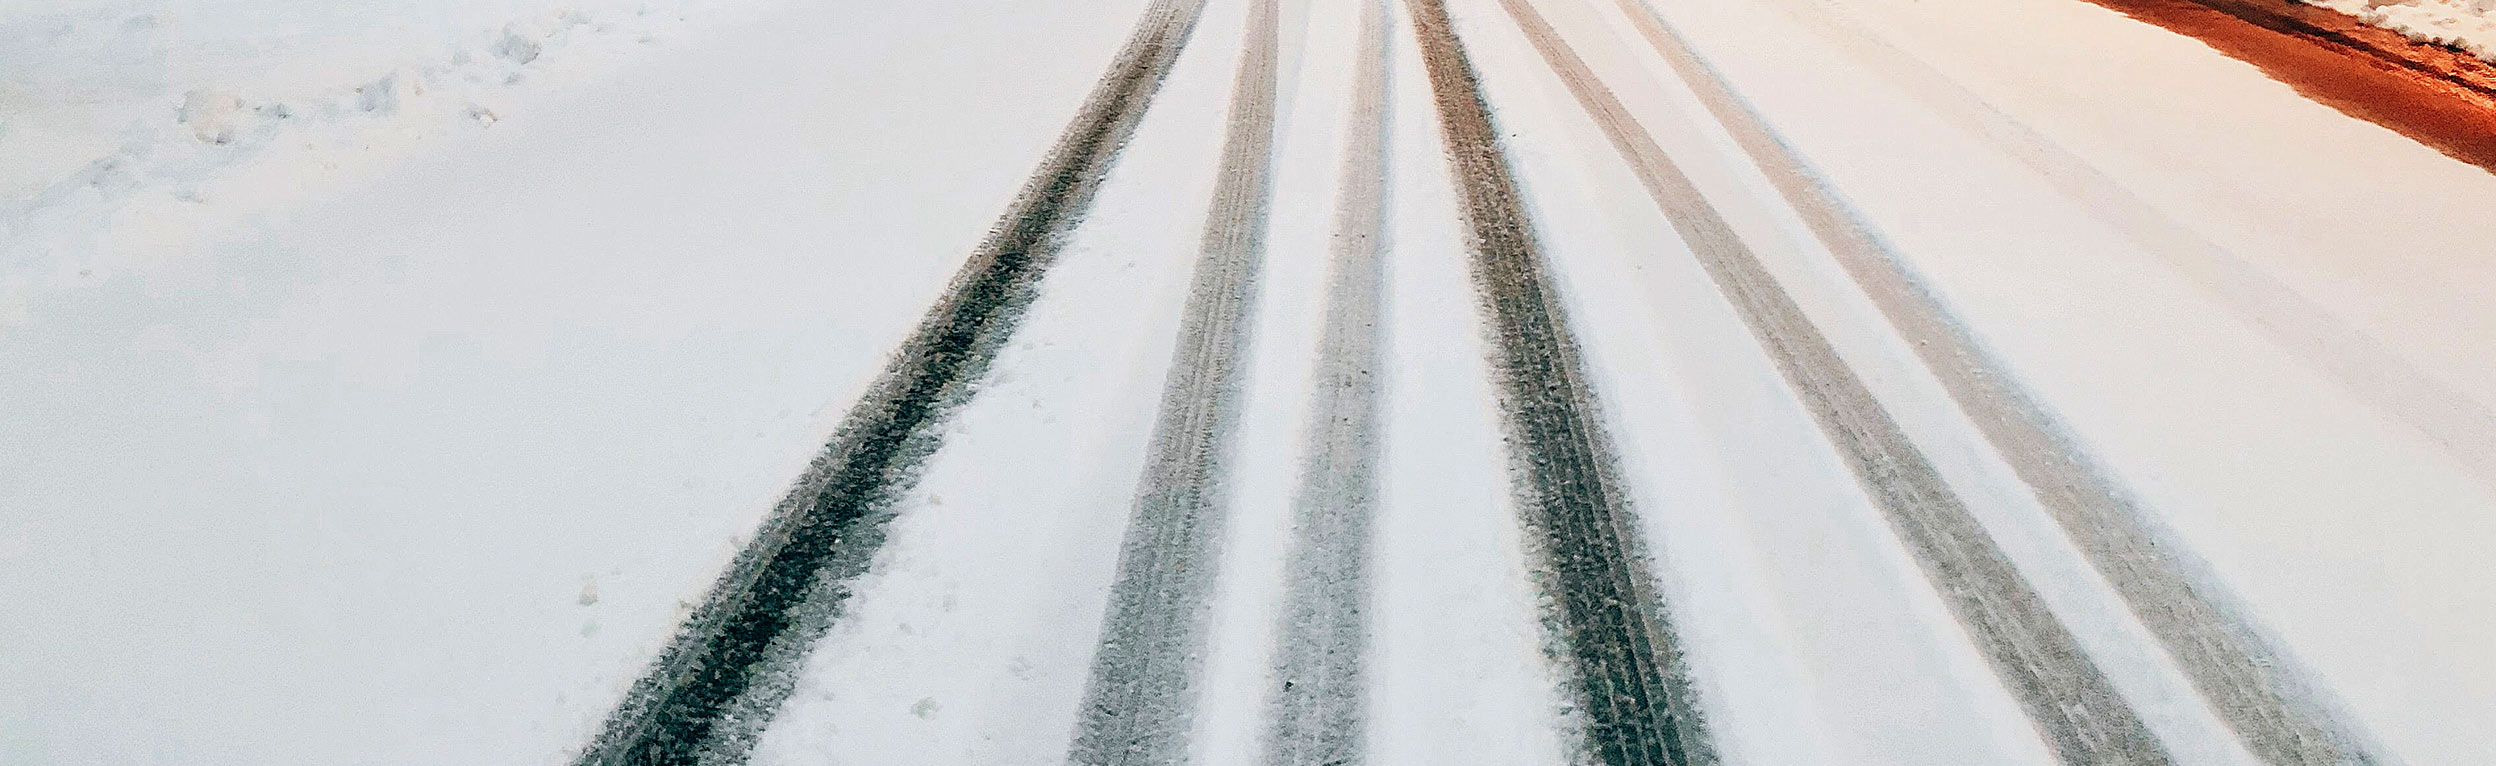 bilspor i sne